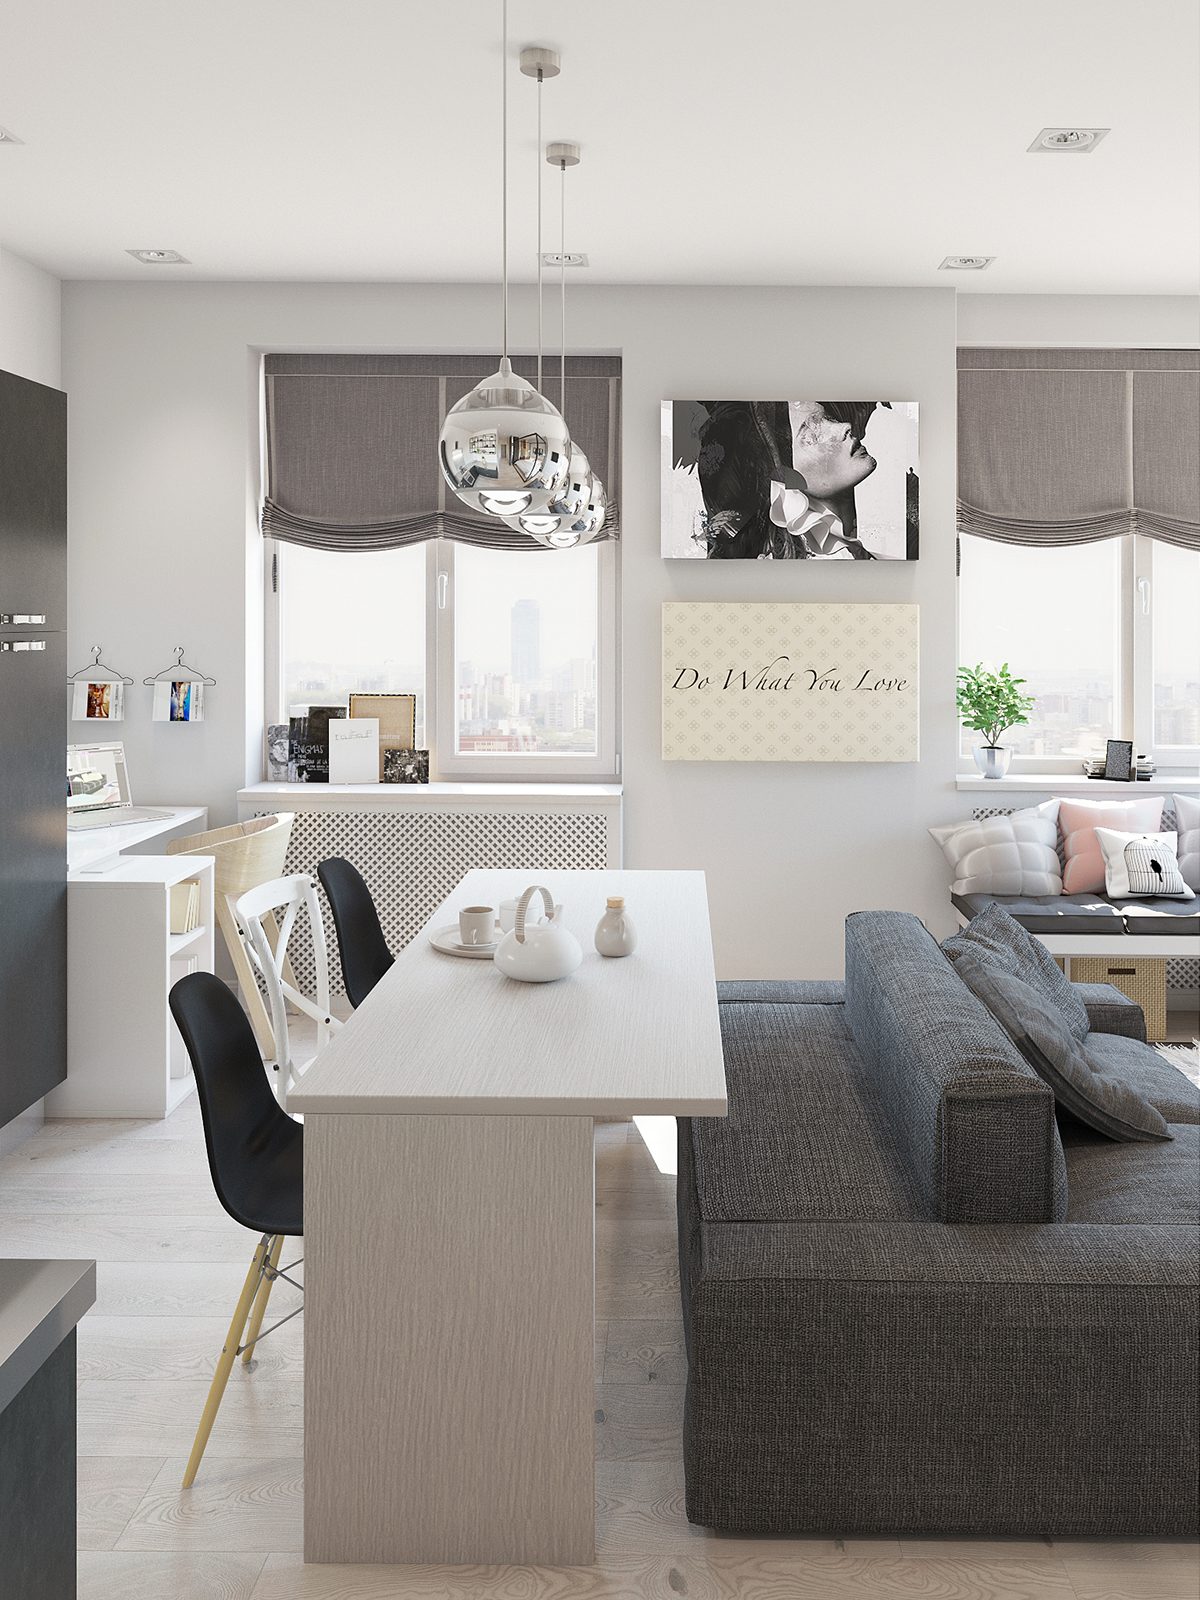 Studio Apartment Interior Design With Cute Decorating Ideas - RooHome